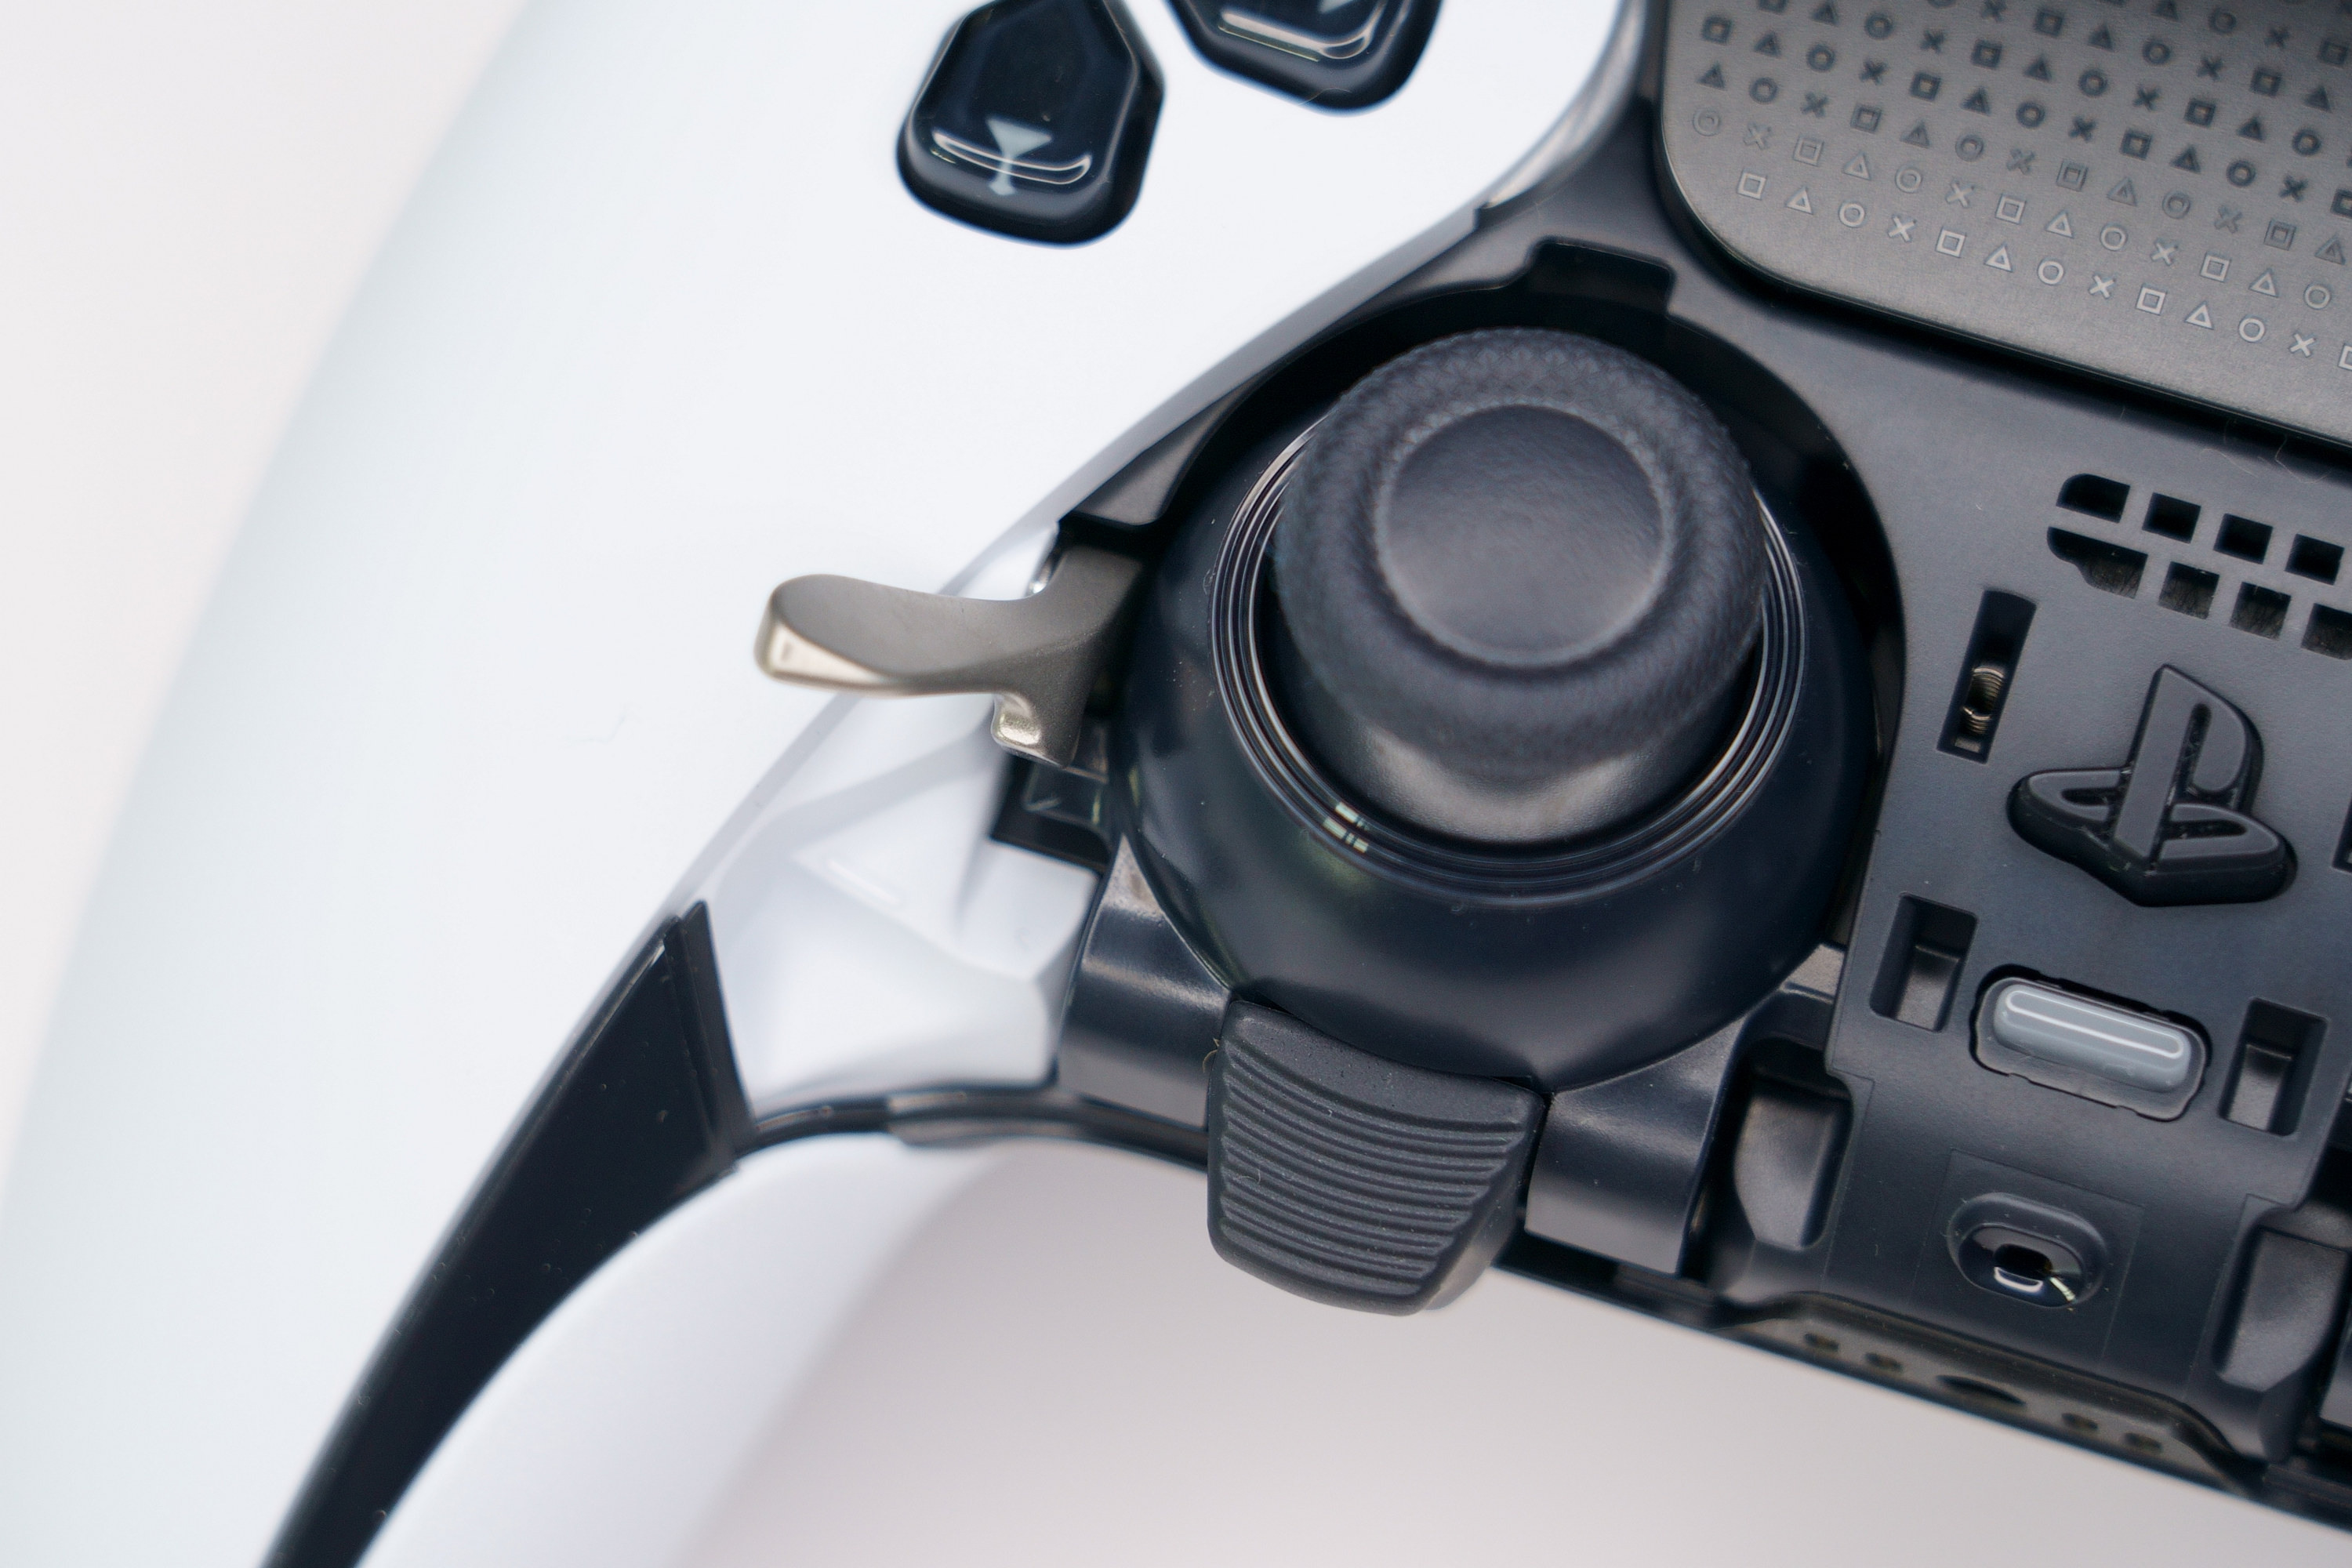 PS5 DualSense Edge 高效能控制器一手开箱 丰富自订功能满足各类型玩家需求插图50